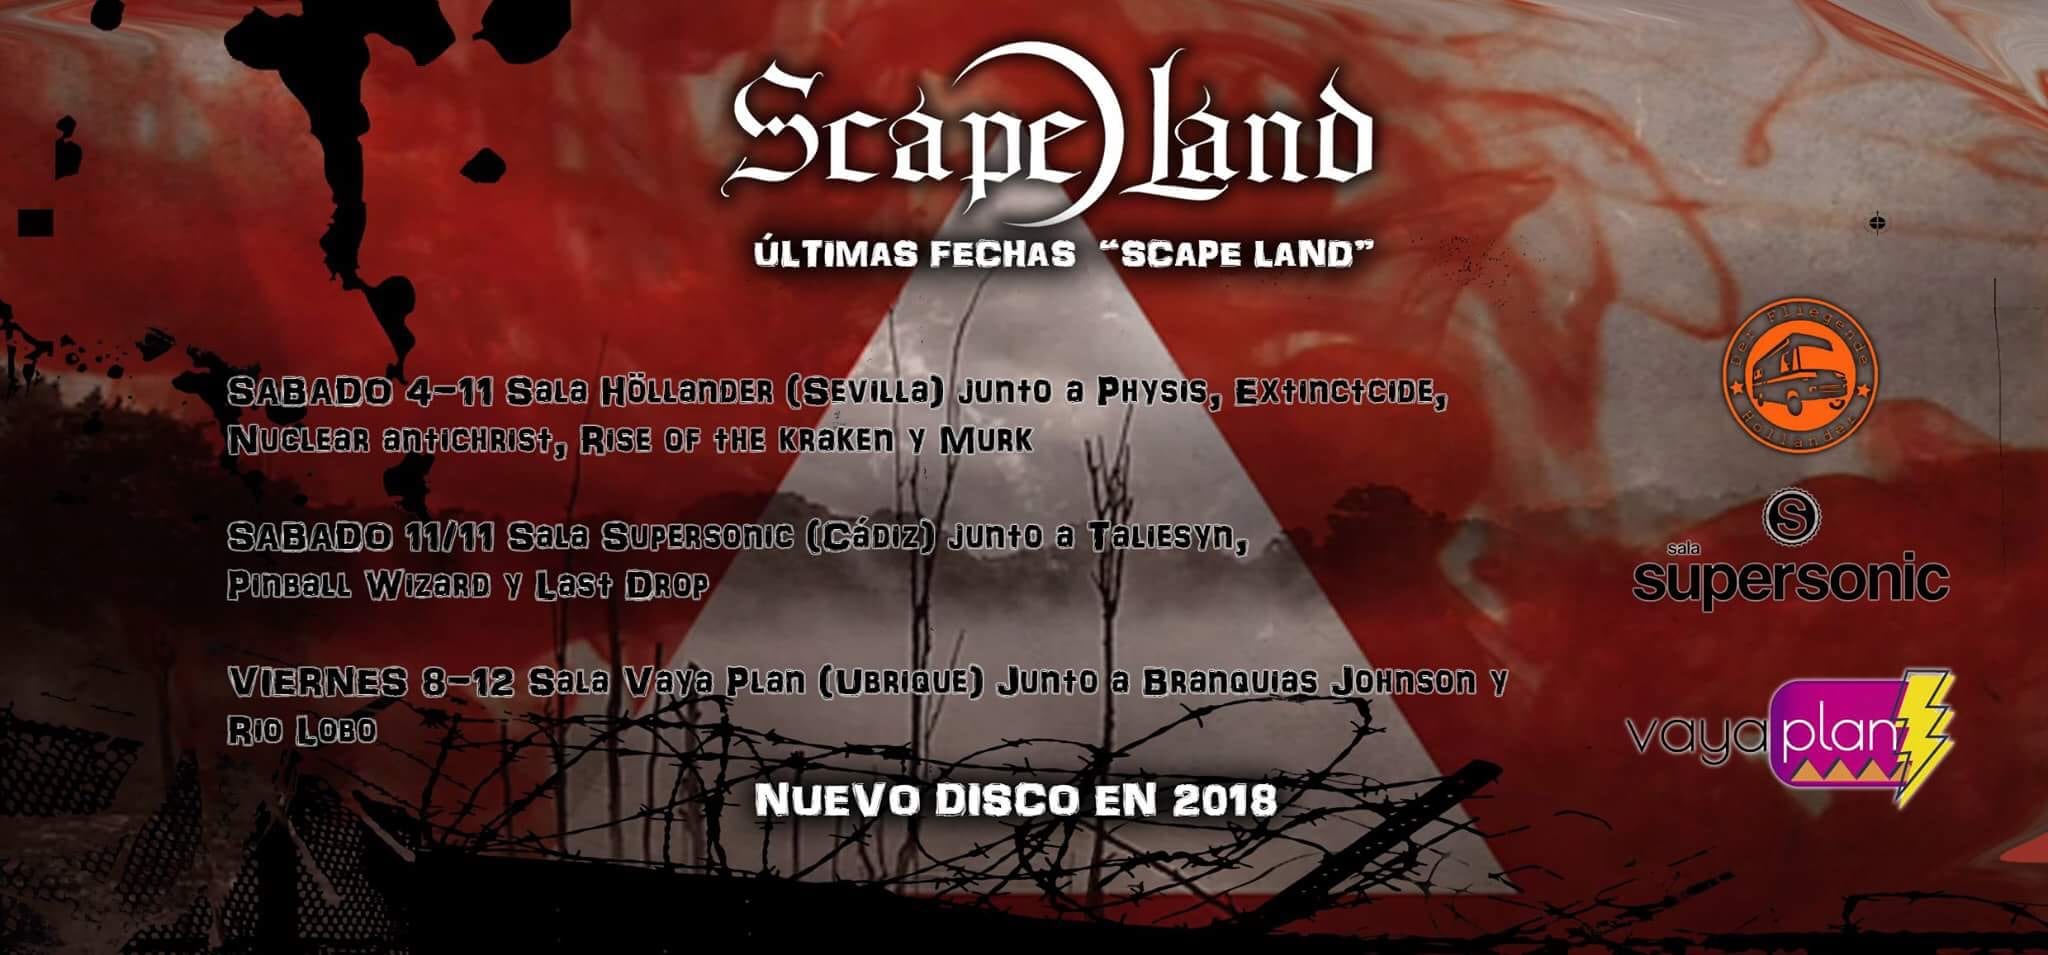 Scape land terminan presentación de su «Scape Land» y abren camino hacia un nuevo trabajo.